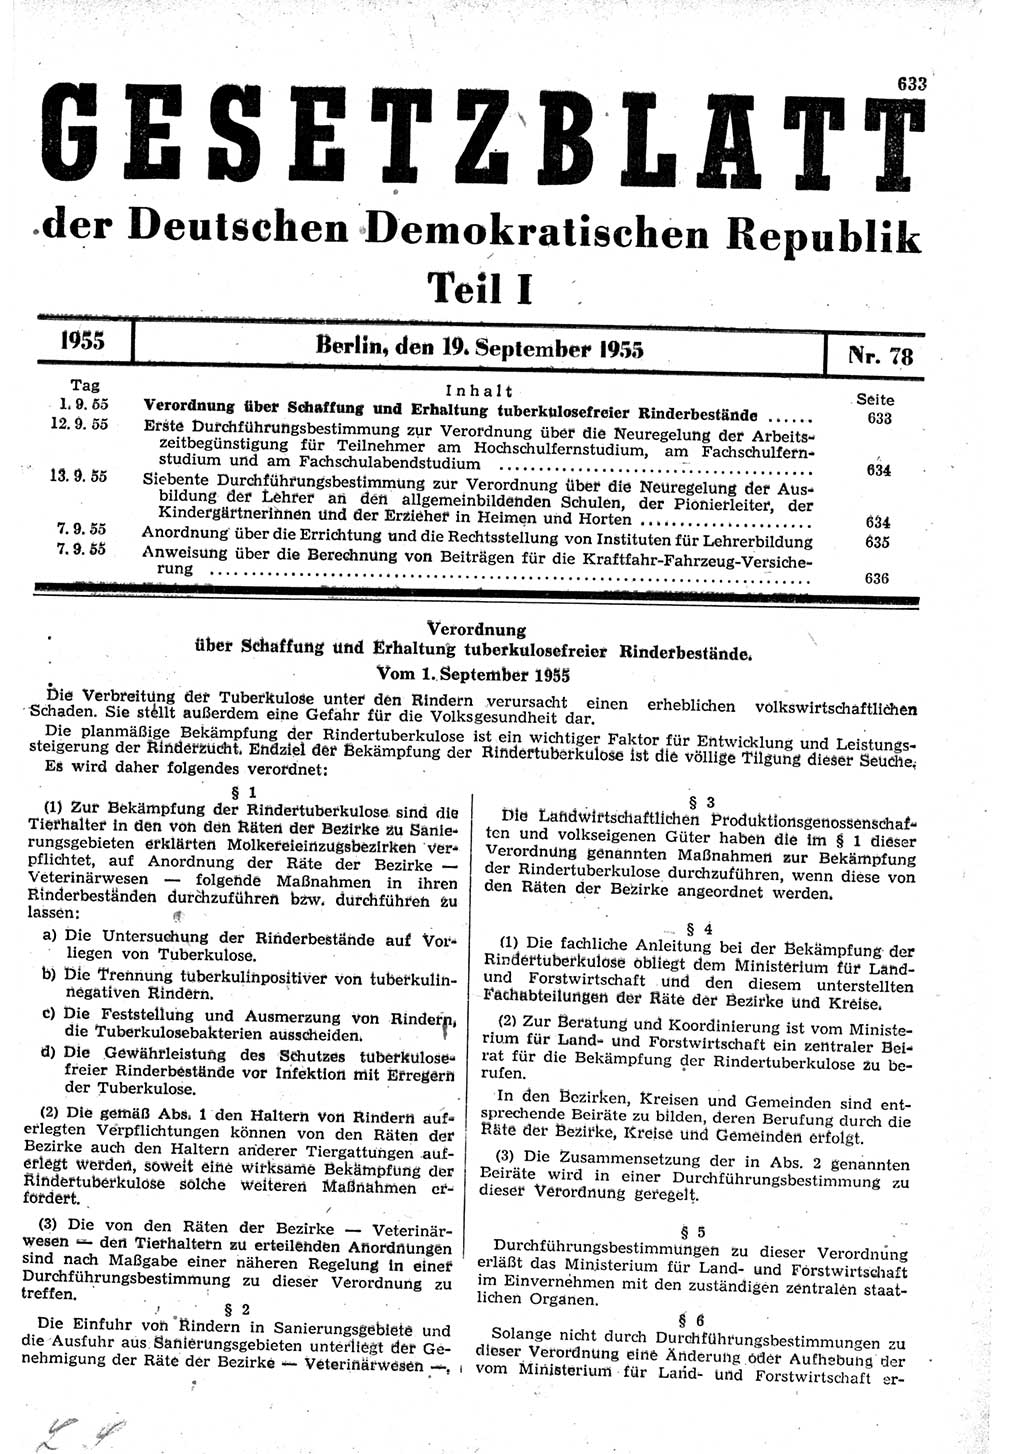 Gesetzblatt (GBl.) der Deutschen Demokratischen Republik (DDR) Teil Ⅰ 1955, Seite 633 (GBl. DDR Ⅰ 1955, S. 633)